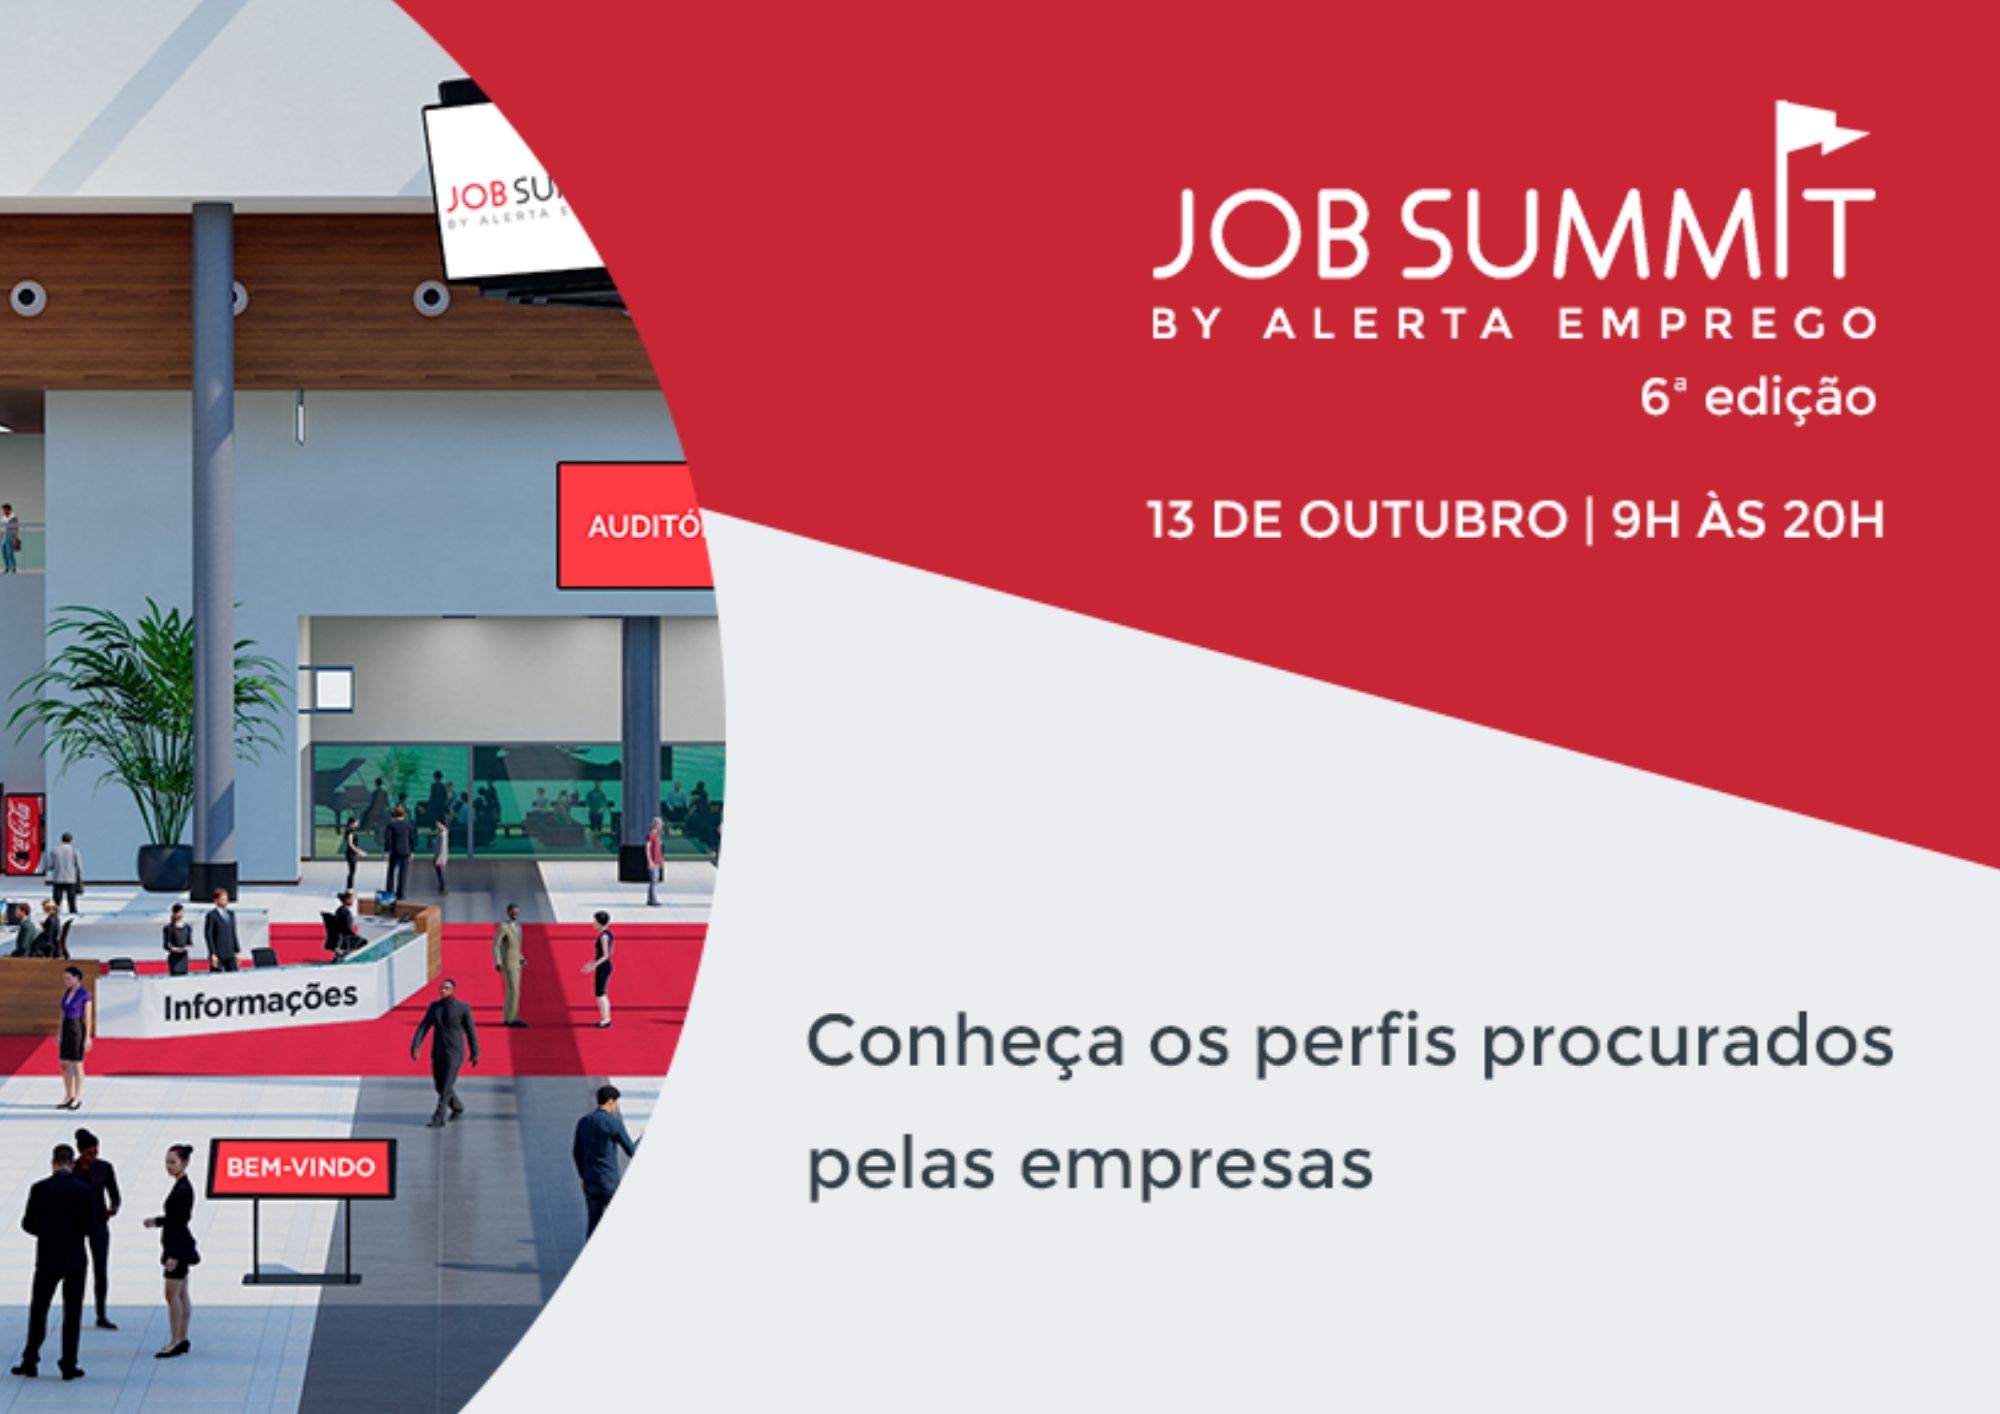 Job Summit - Feira de Emprego, dia 13 de outubro, online e gratuita